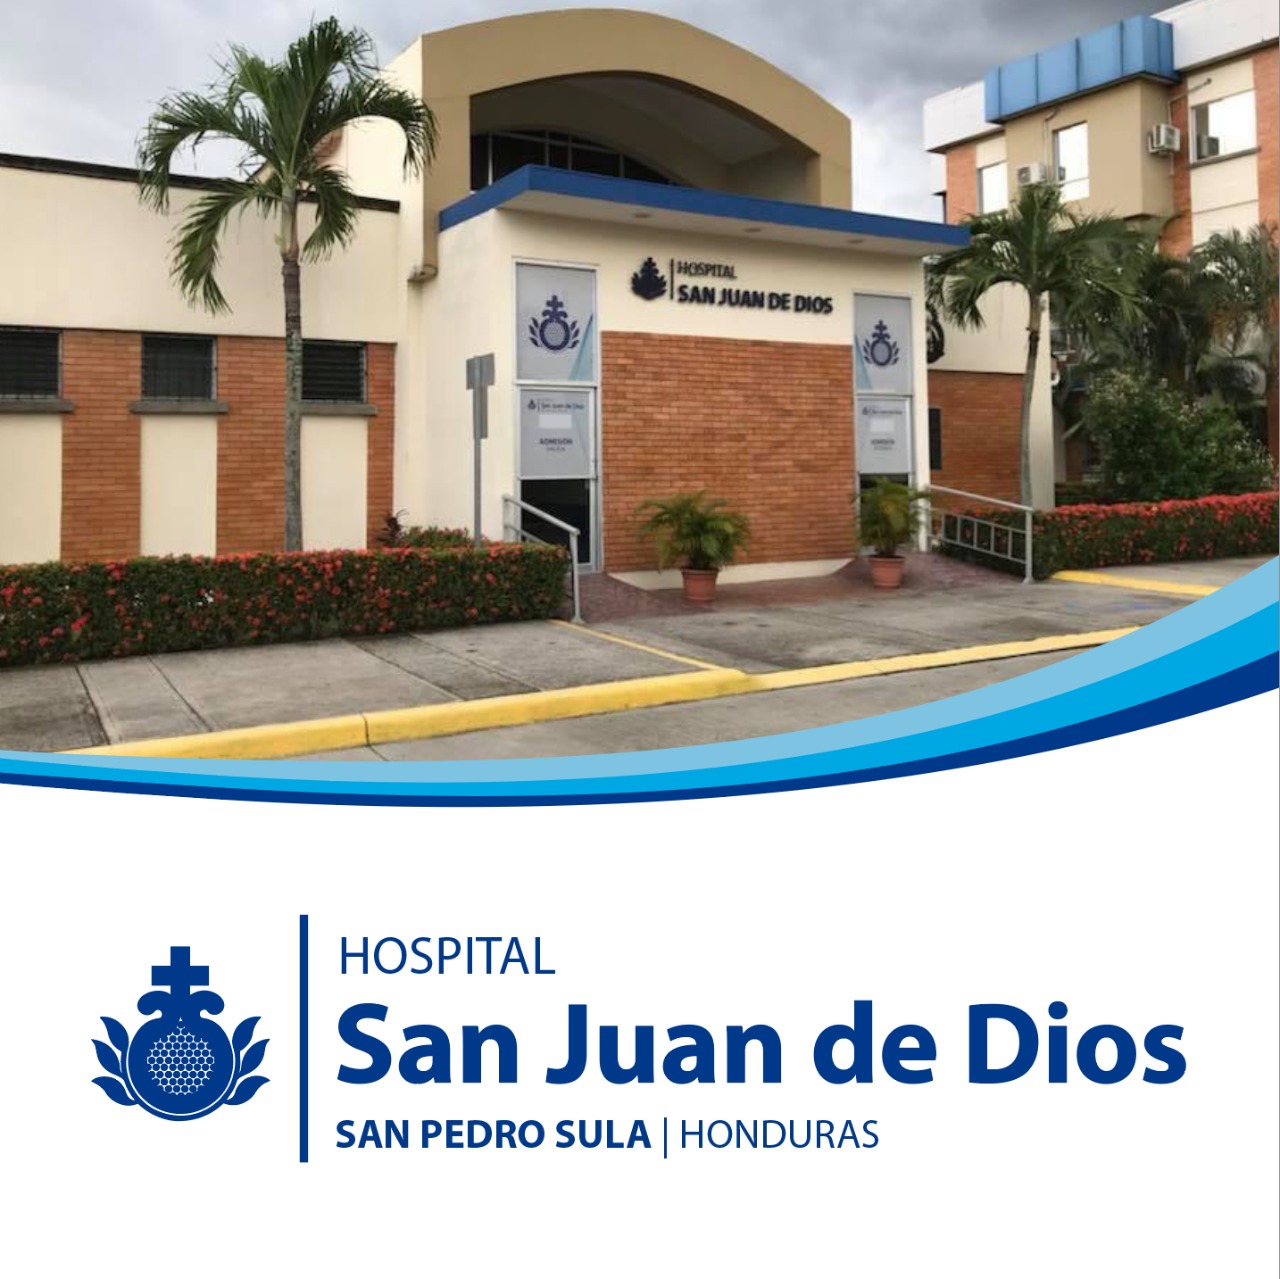 Centro Honduras Hospital San Juan de Dios | Orden Hospitalaria San Juan de Dios